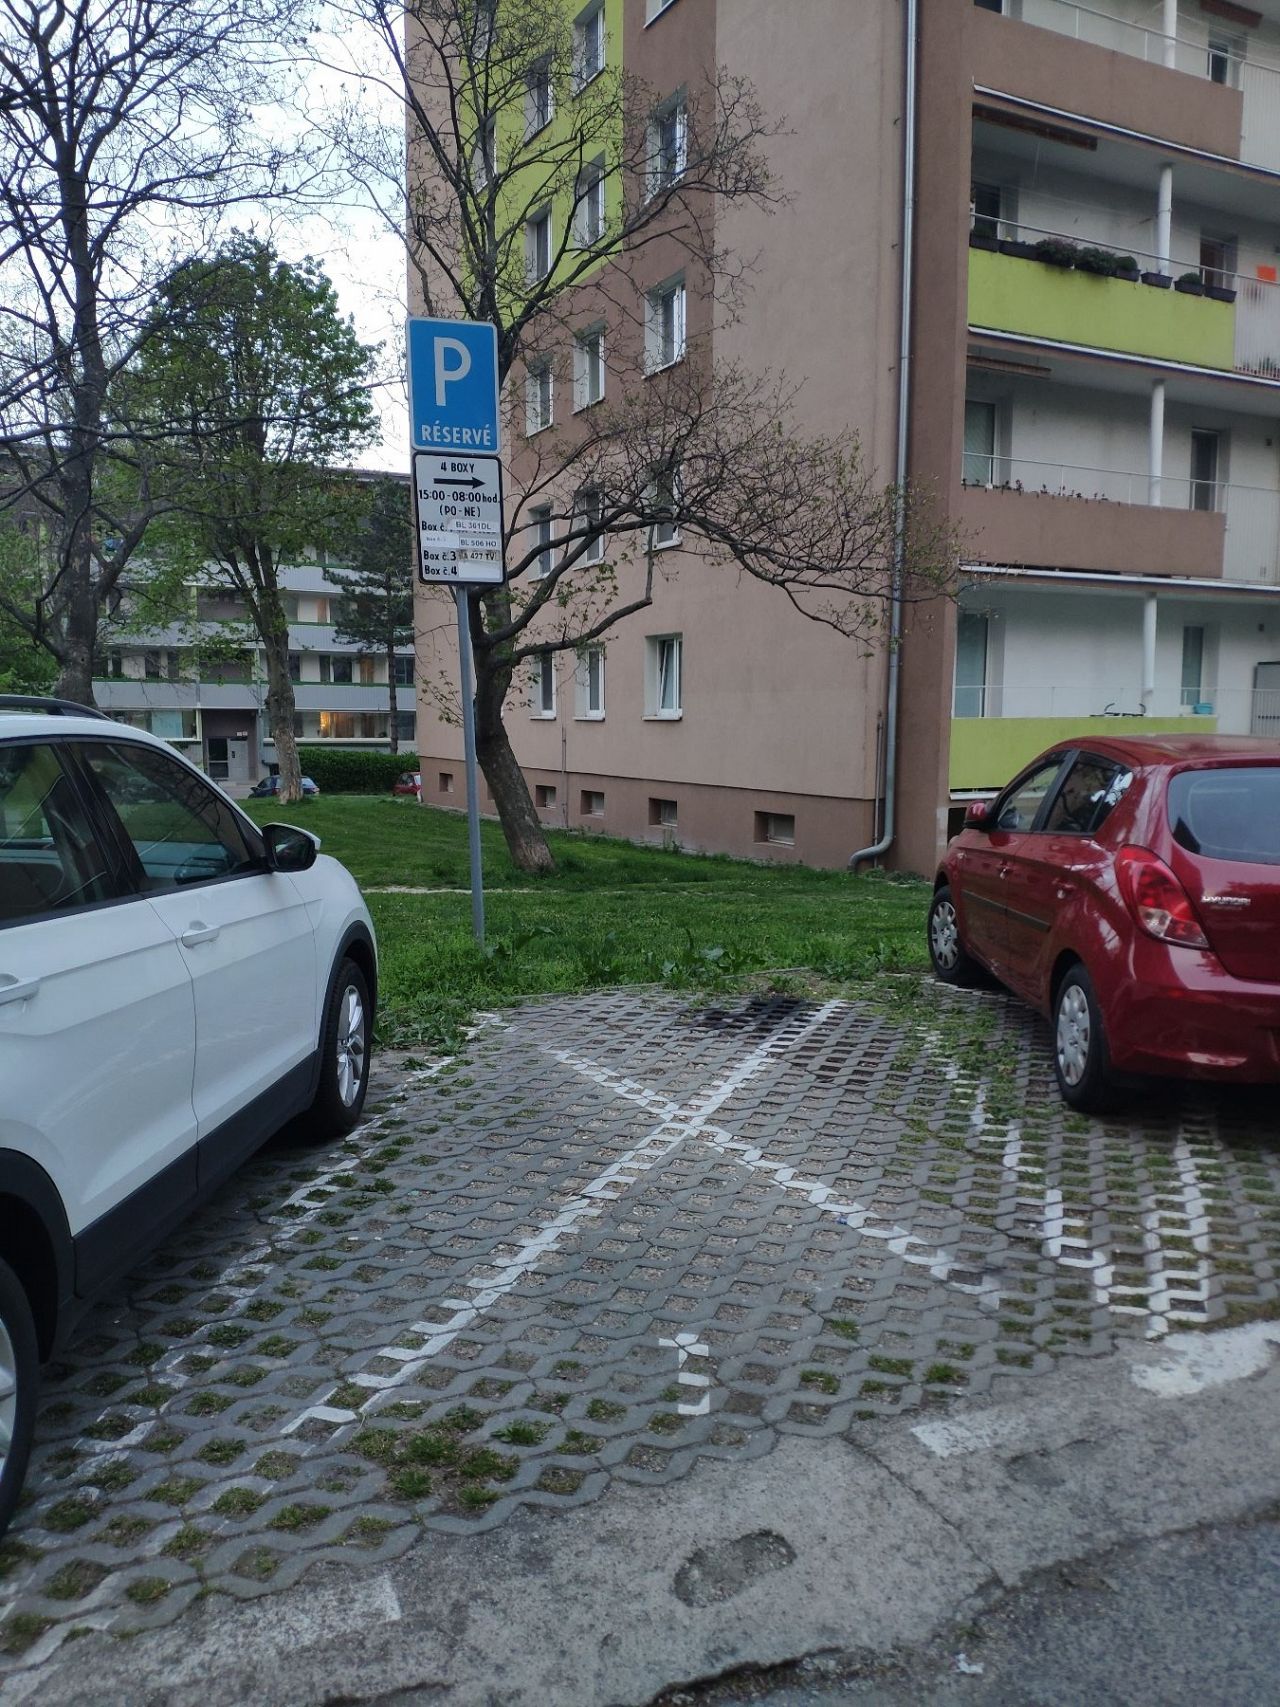 Nevyužívané vyhr. parkovanie na Segnerovej 6, Karlova Ves, Bratislava |  Odkazprestarostu.sk